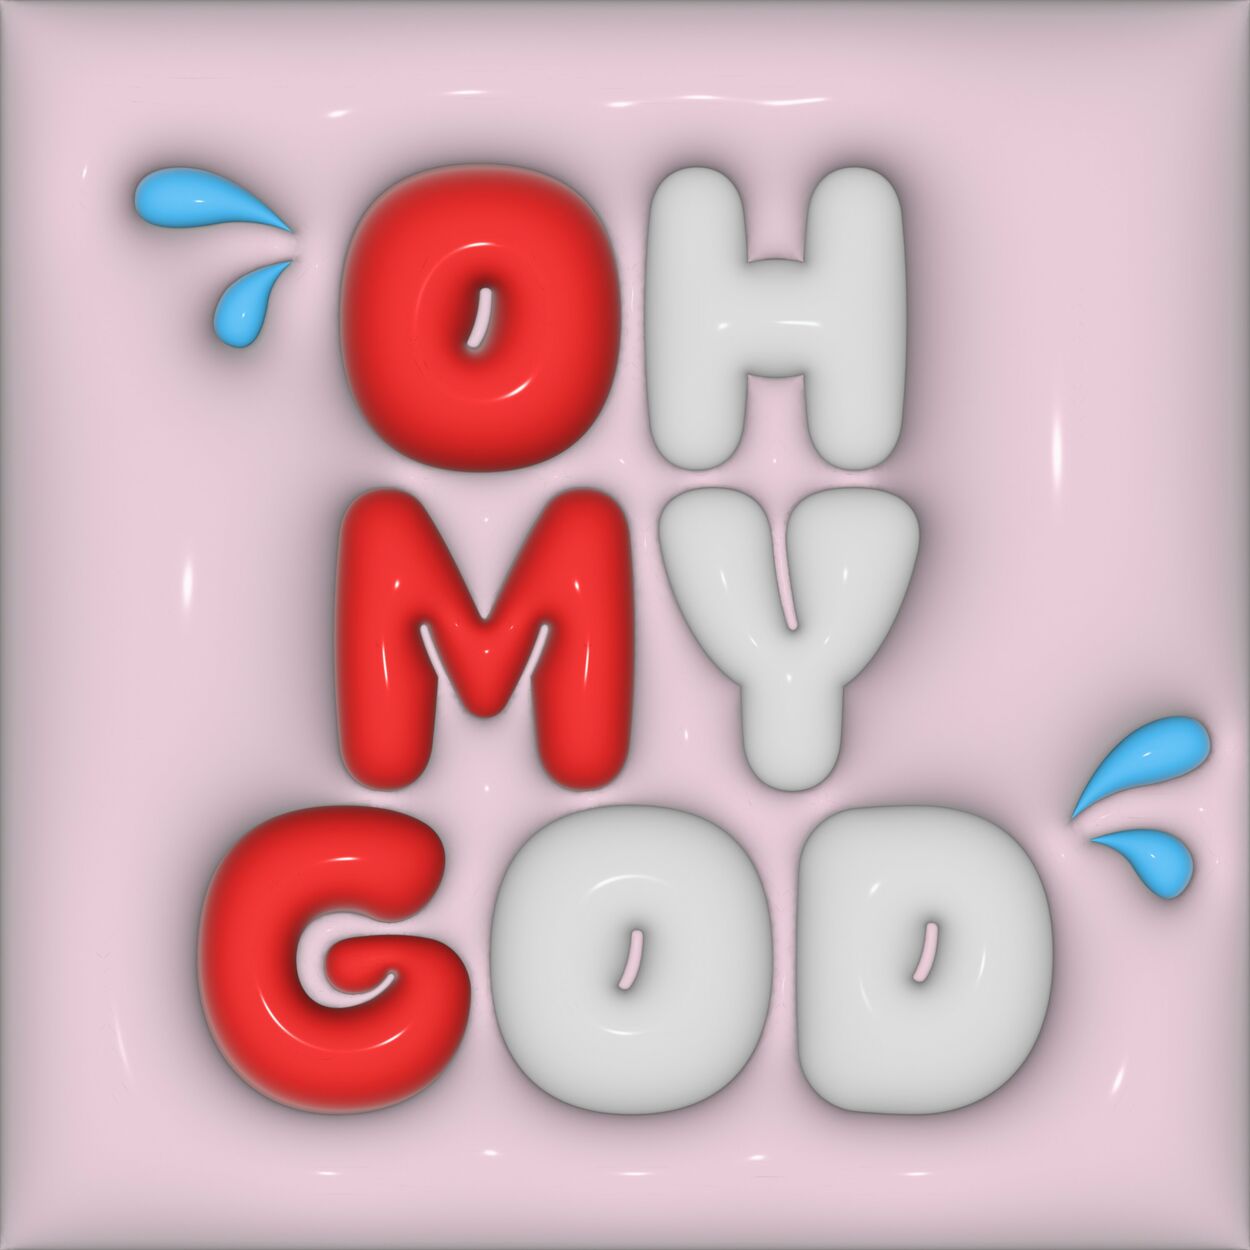 NCA – Oh My God (2023) – Single